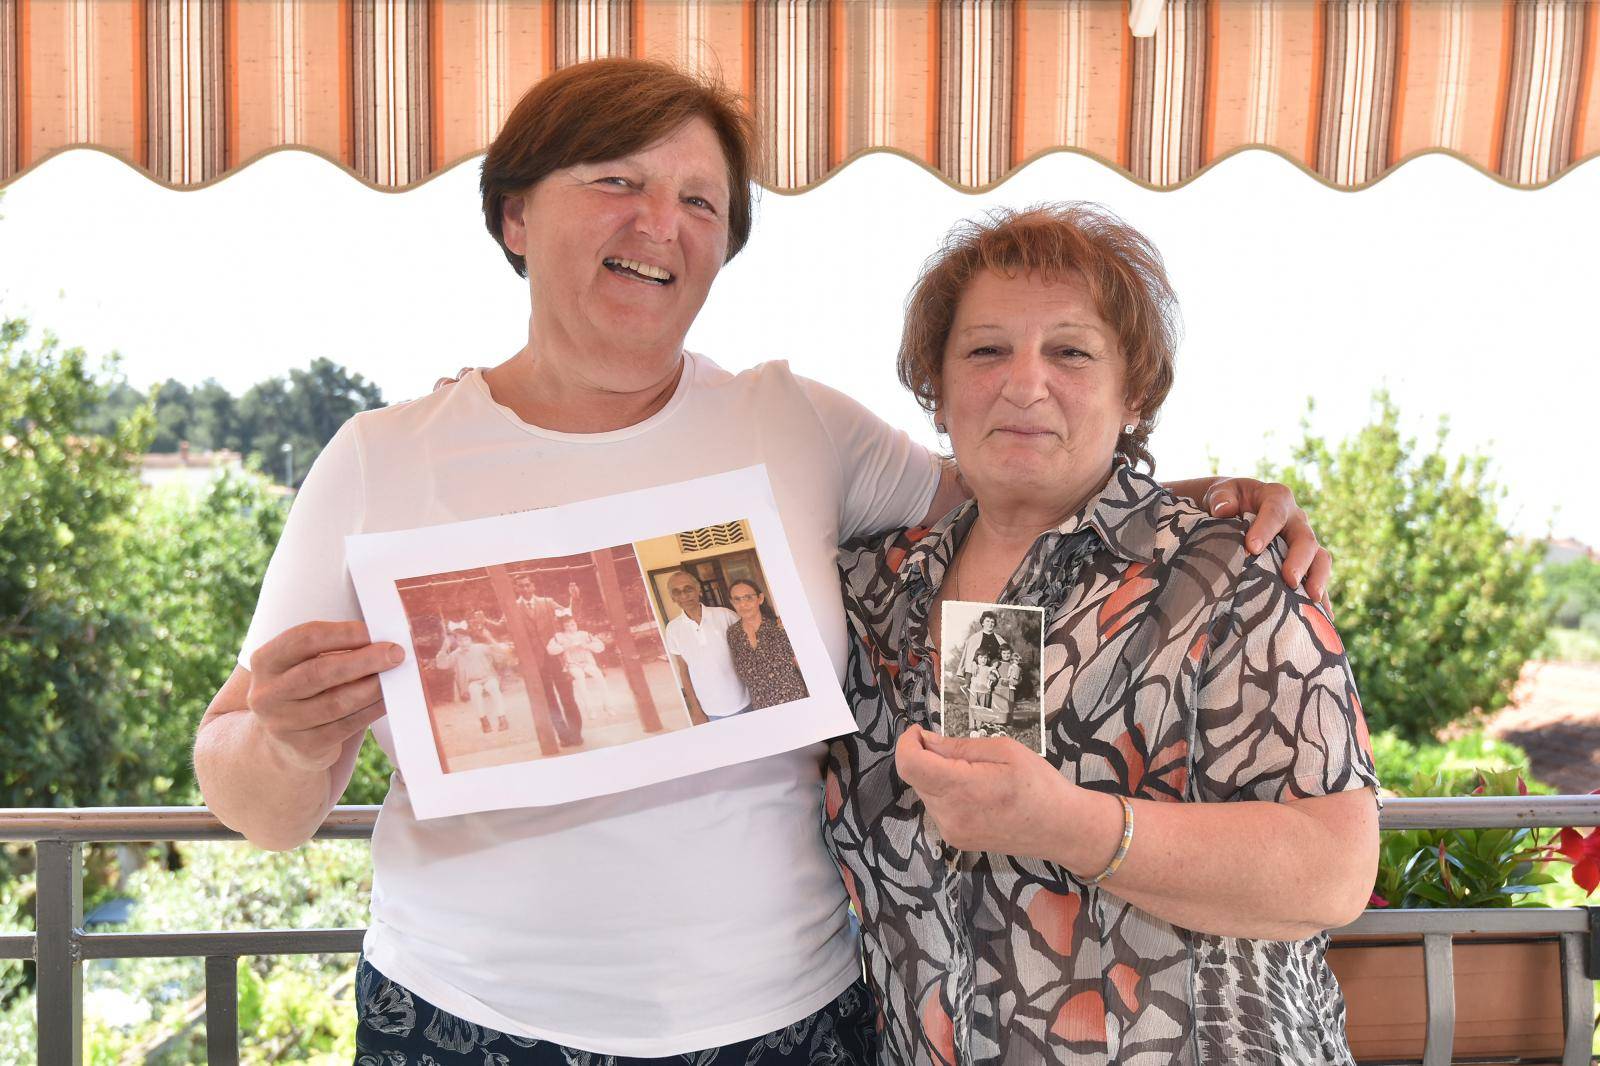 Našao curice iz Pule nakon 56 godina: 'Mi smo sestre sa slike'